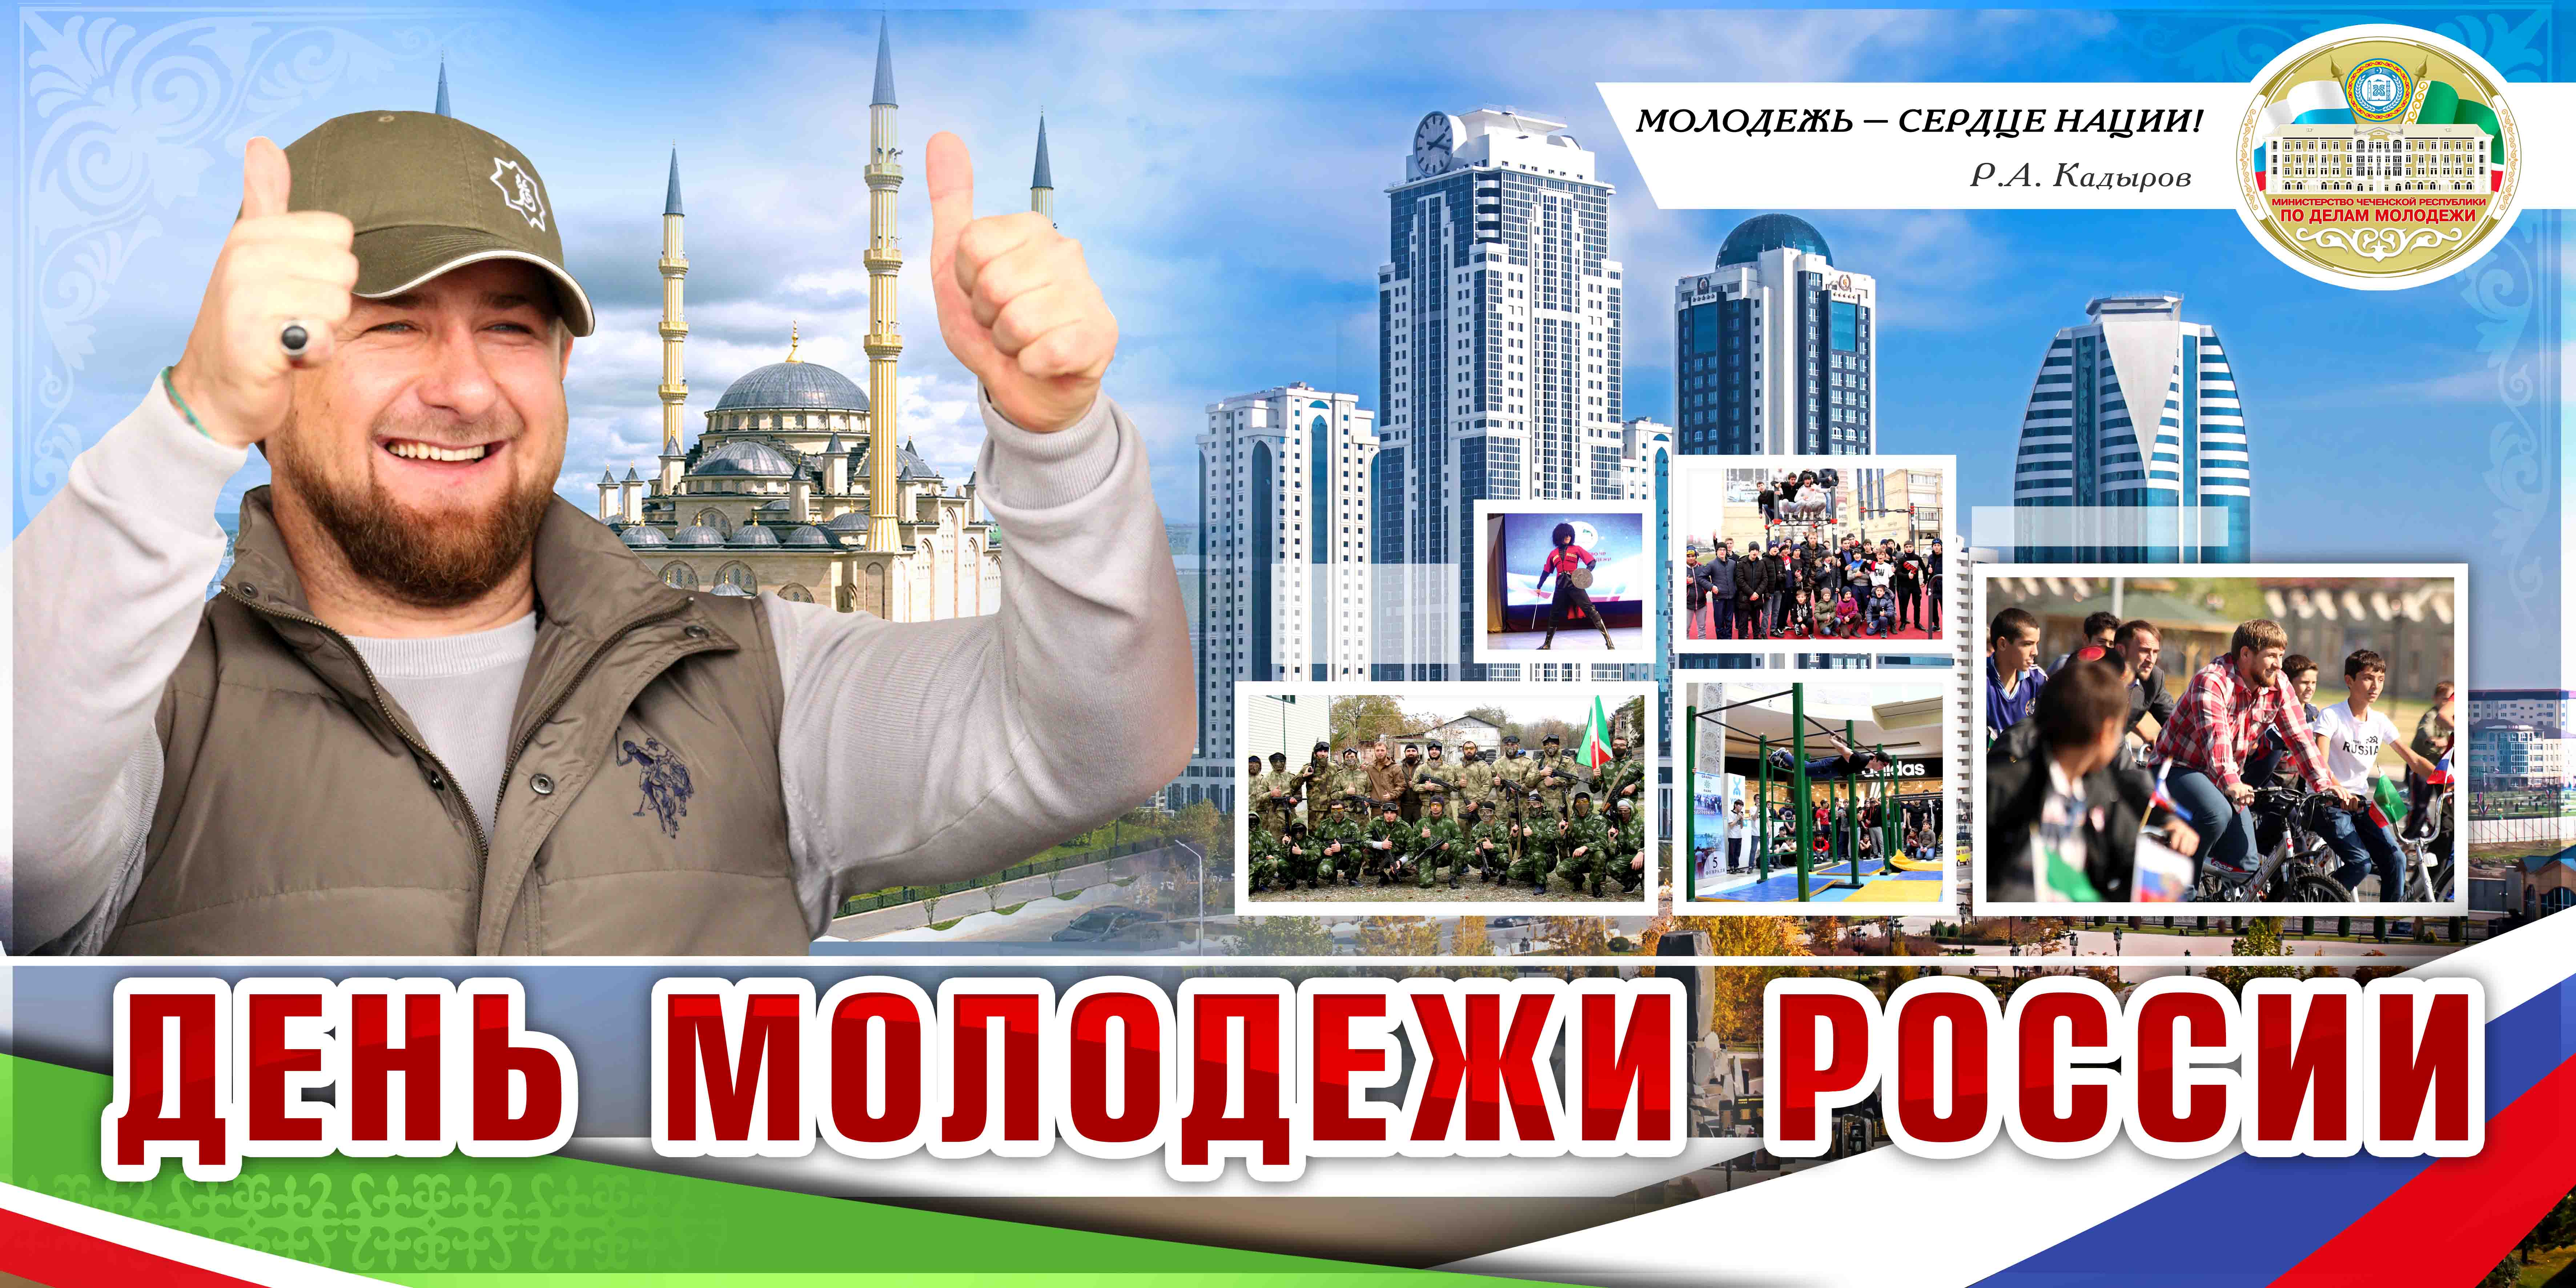 Погода на 10 дней в чеченской республике. День молодежи в Грозном. День Чеченской молодежи. День молодежи Чеченской Республики. Молодежь Чеченской Республики.